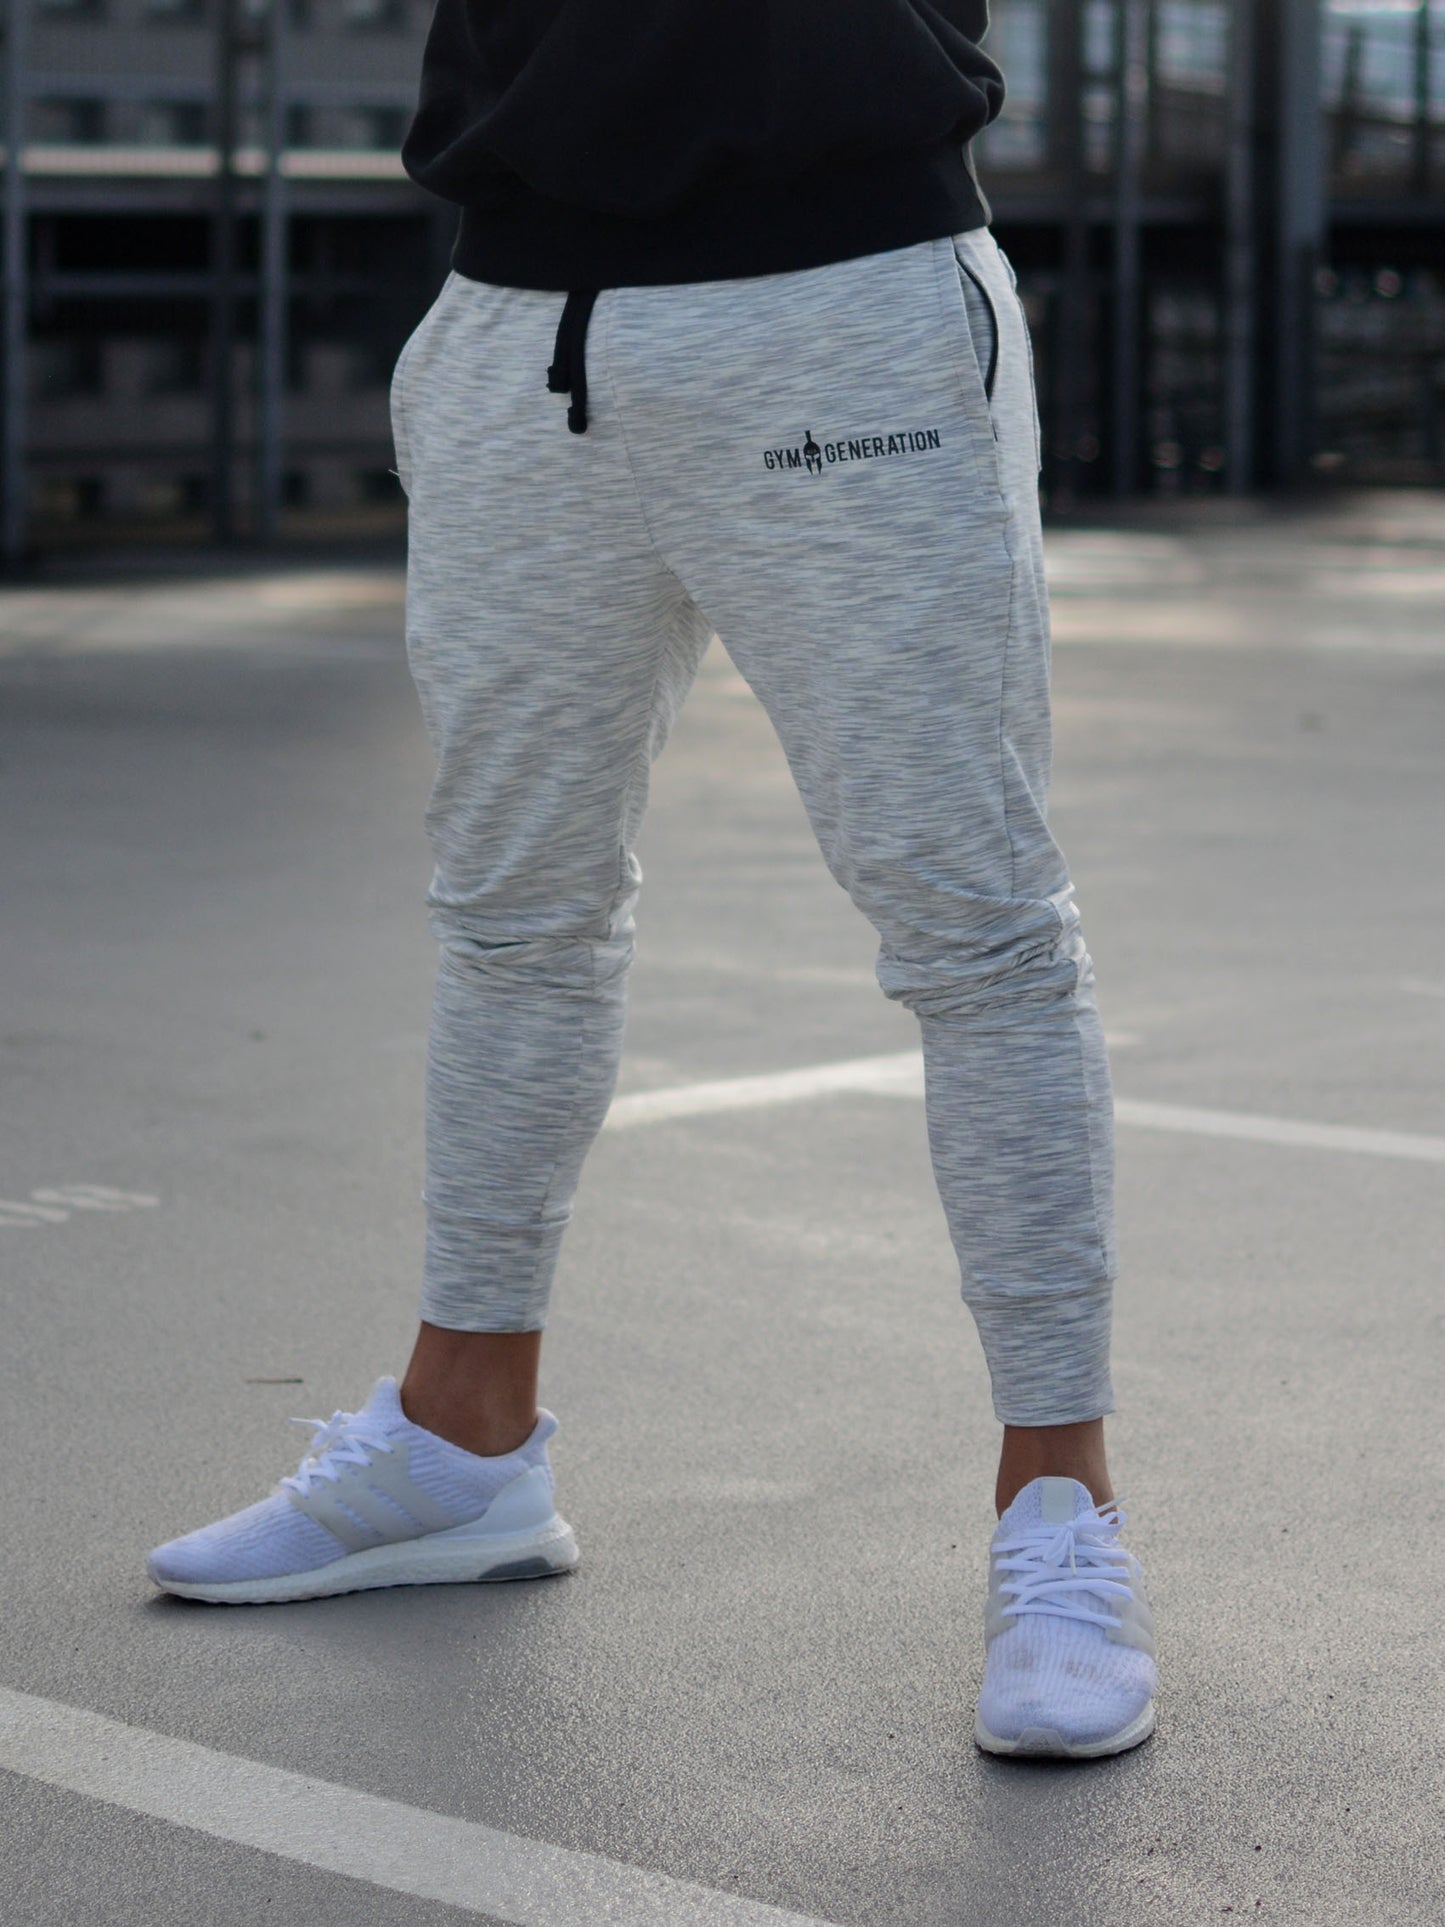 Stylische Sporthose von Gym Generation in trendigem Off White, getragen von einem sportlichen Mann mit Sneakers.